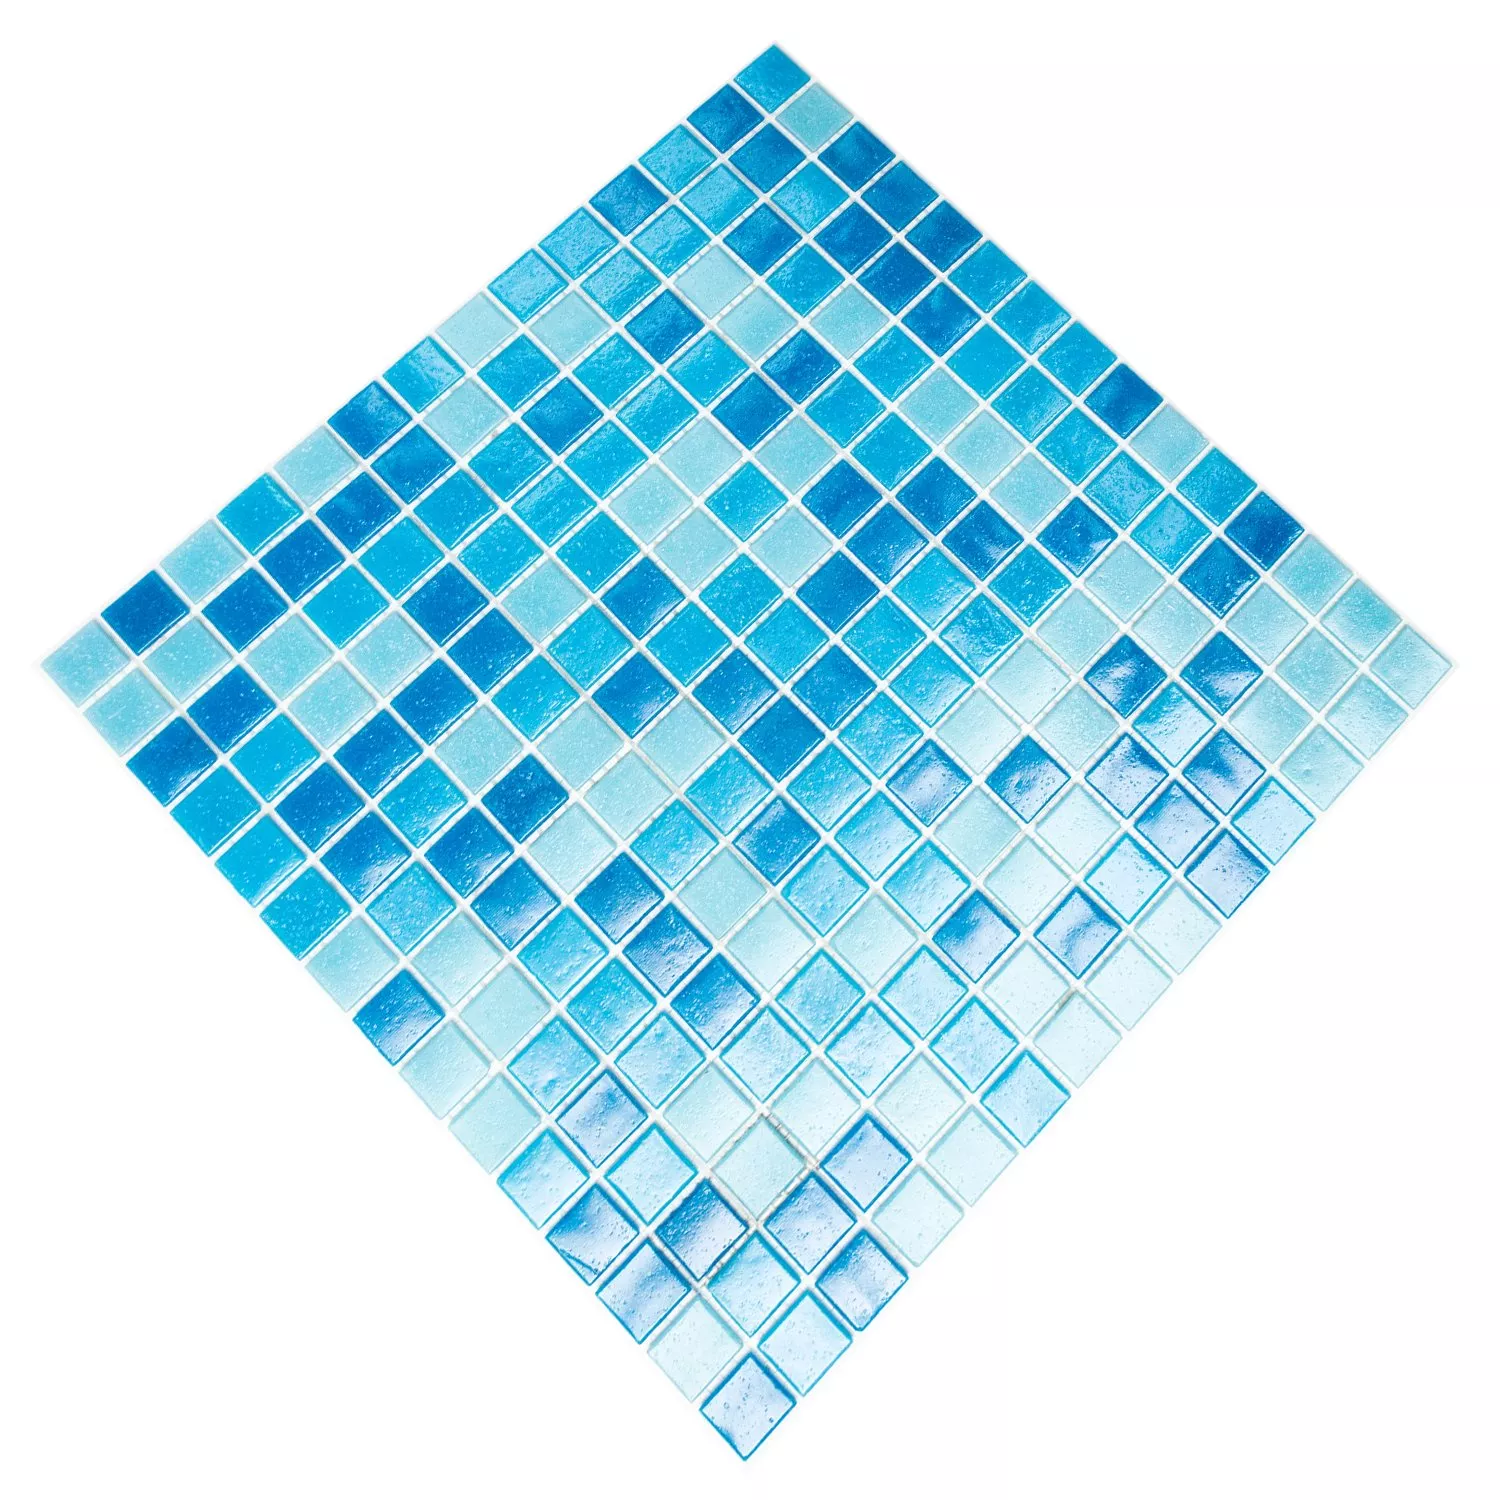 Mozaika Szklana Płytki Niebieski Mix